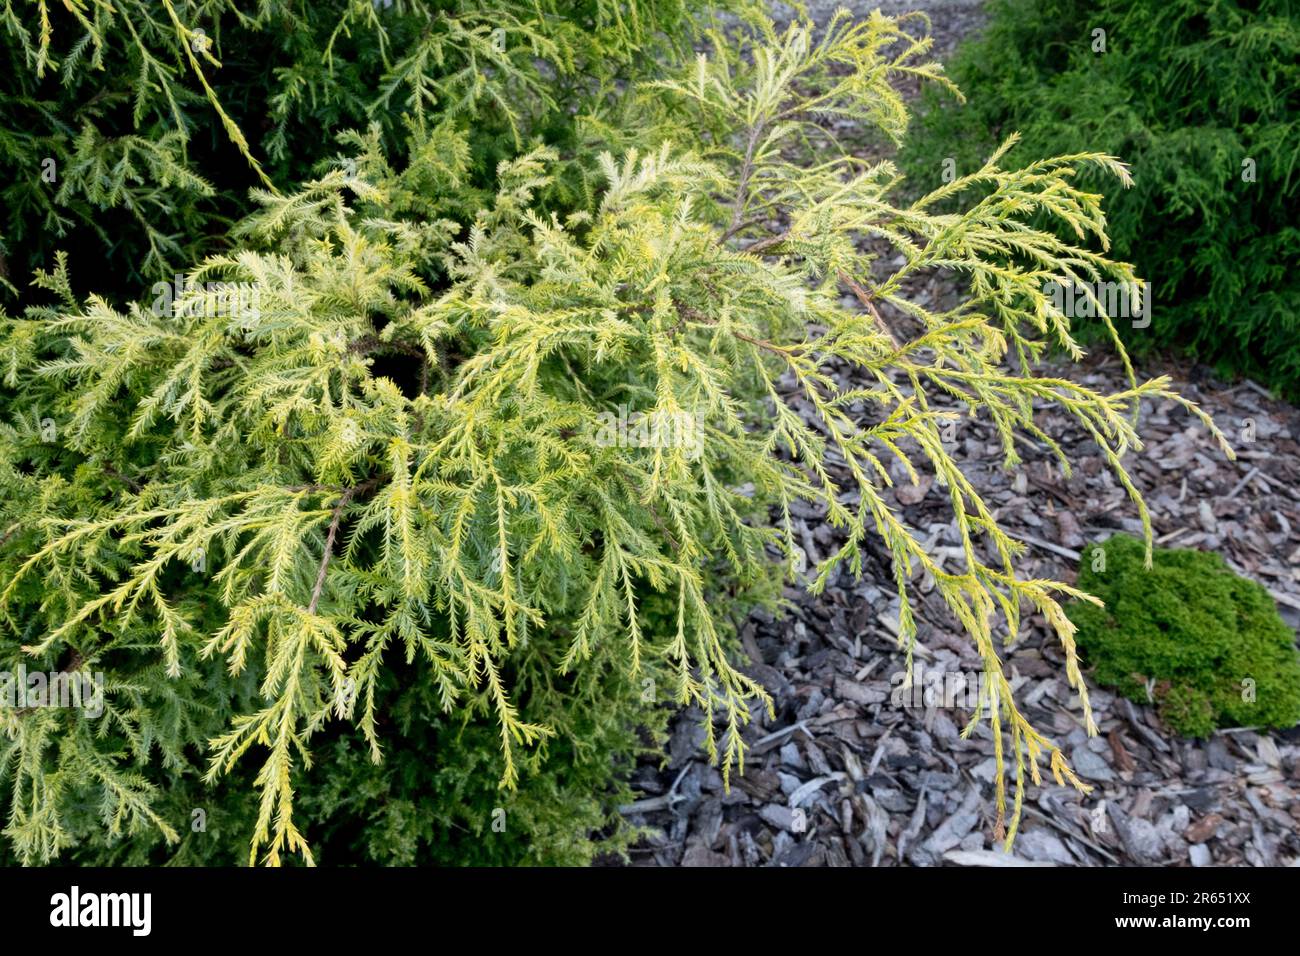 Chamaecyparis pisifera "Plumosa Compressa Aurea" in Garden Stock Photo